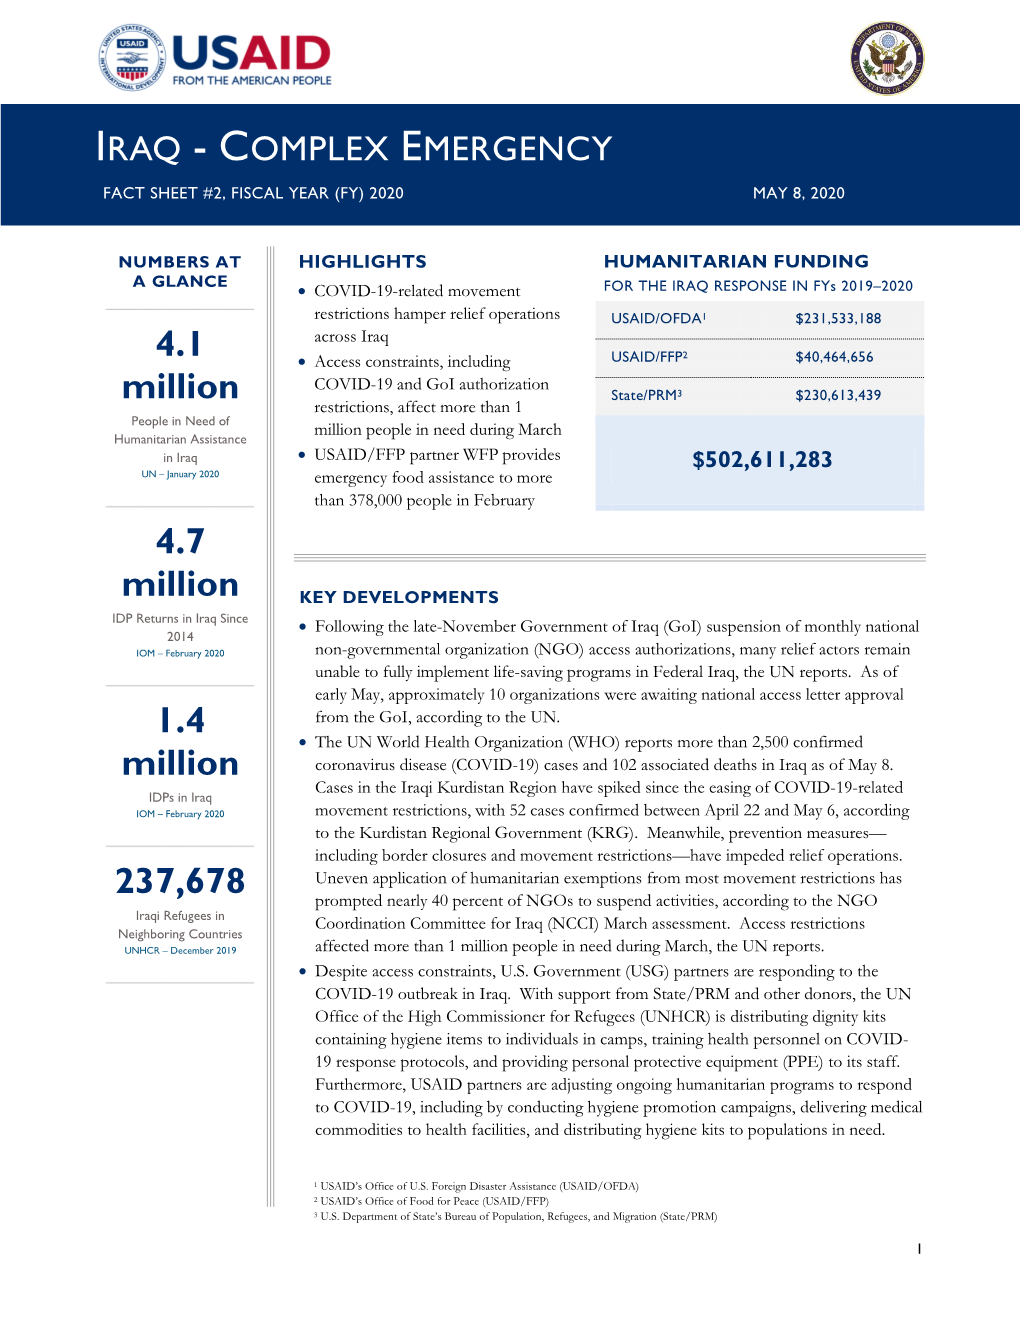 USG Iraq Complex Emergency Fact Sheet 2